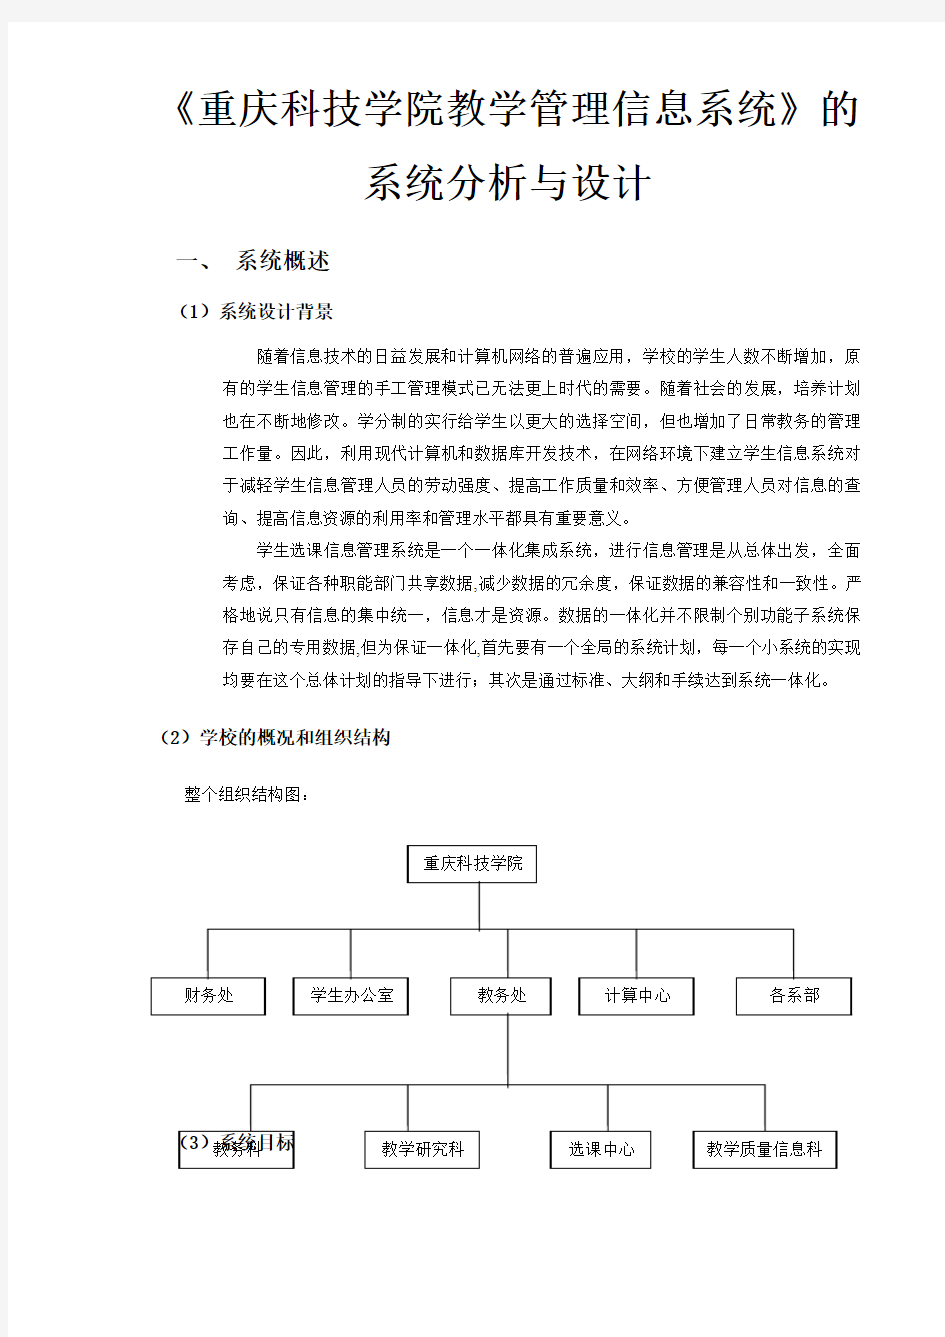 《重庆科技学院教学管理信息系统》的系统分析与设计